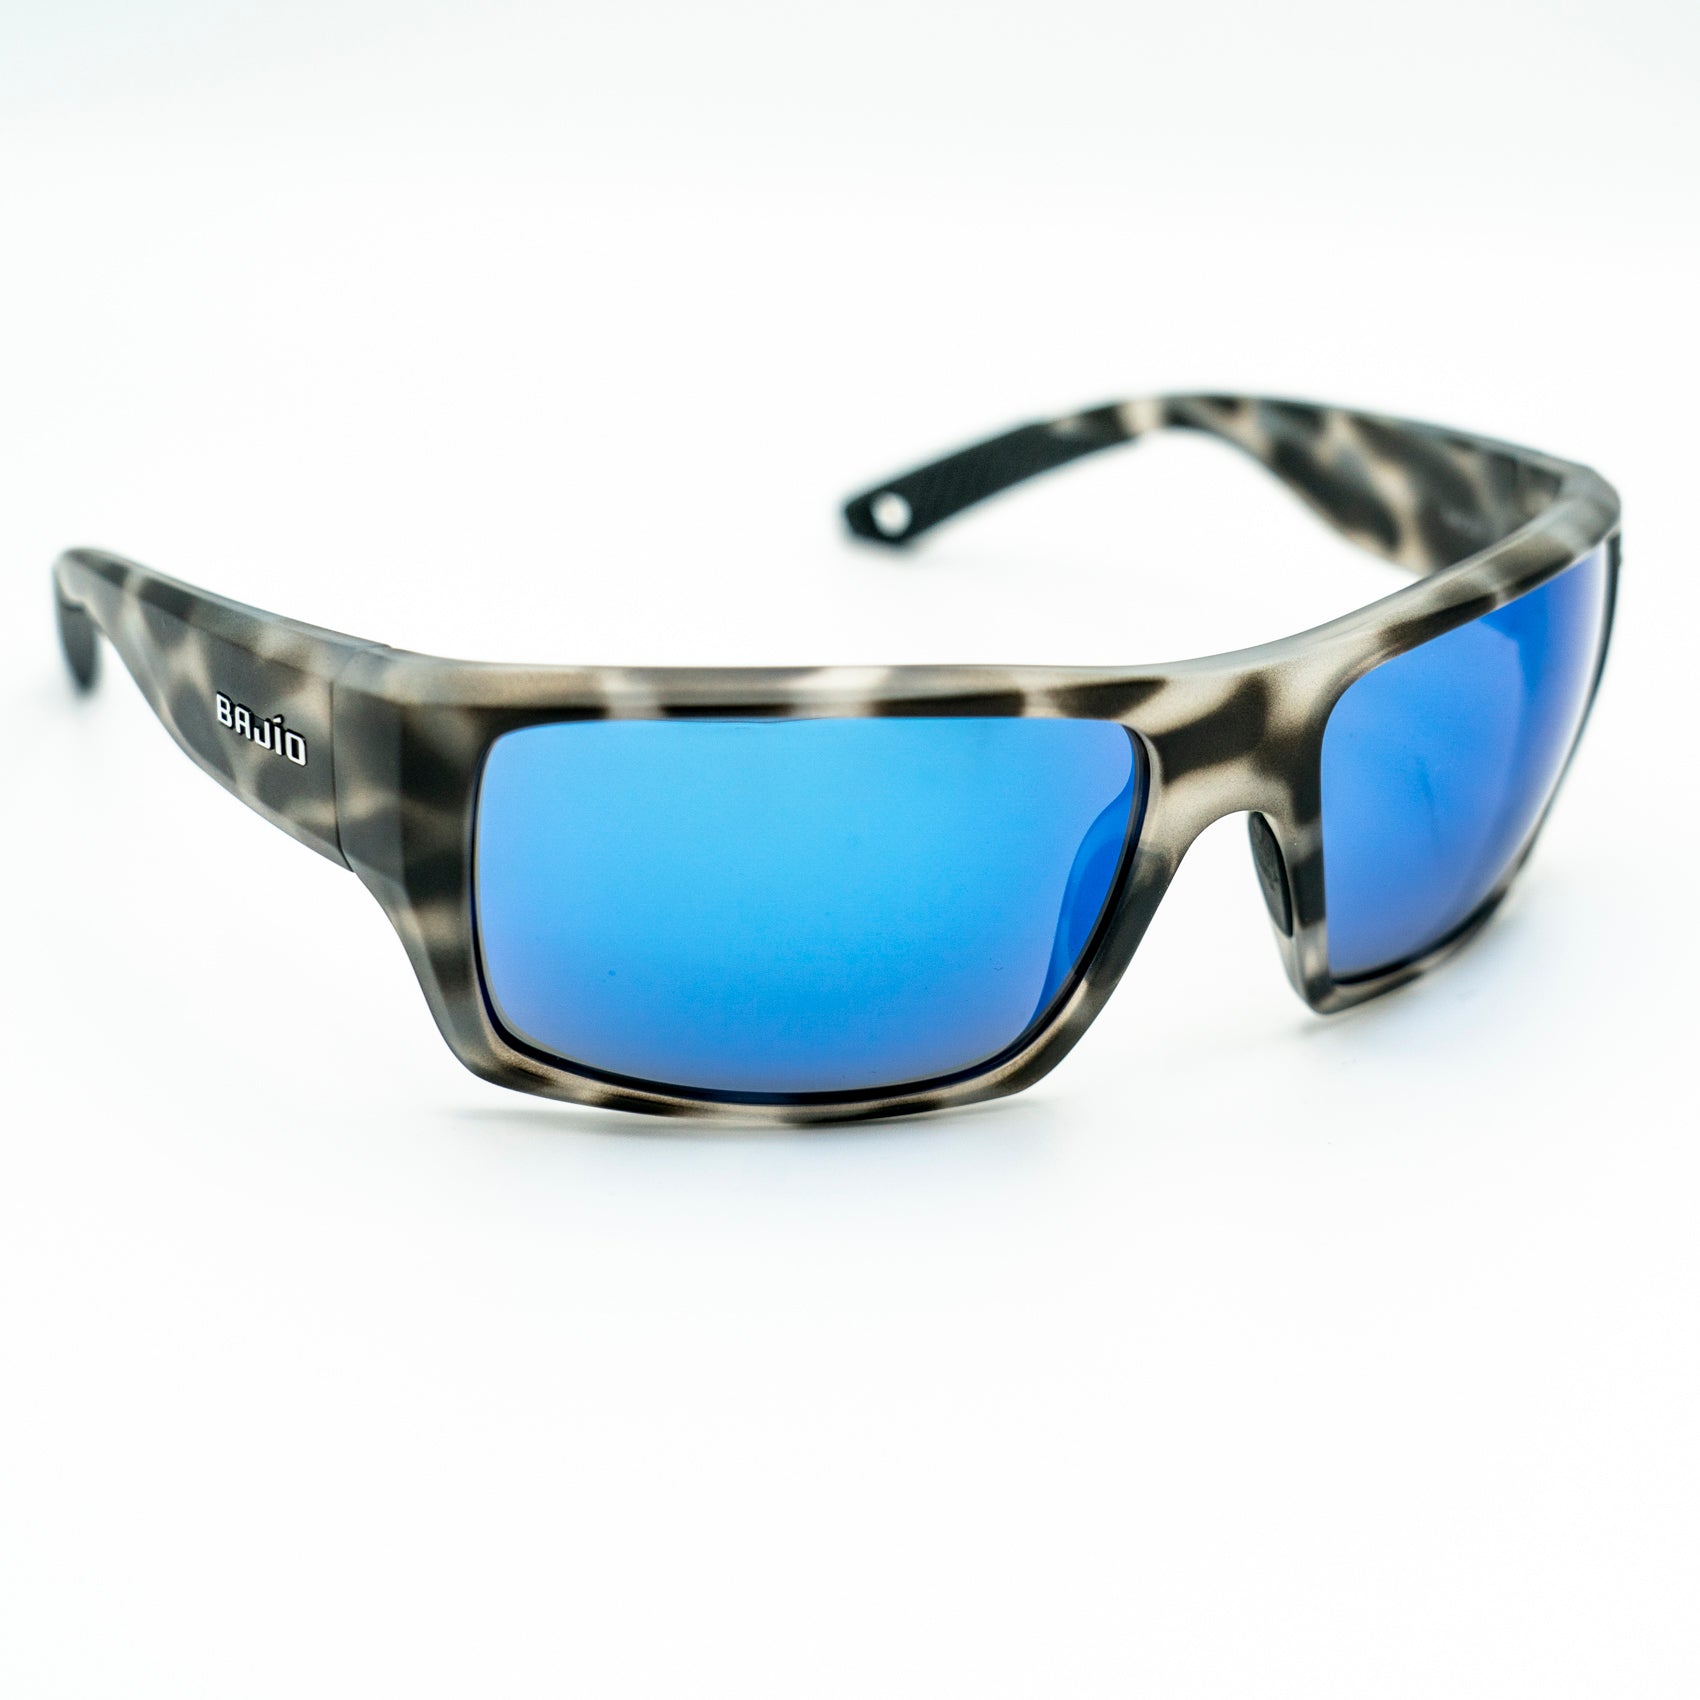 Bajio Nato Sunglasses – Emerald Water Anglers